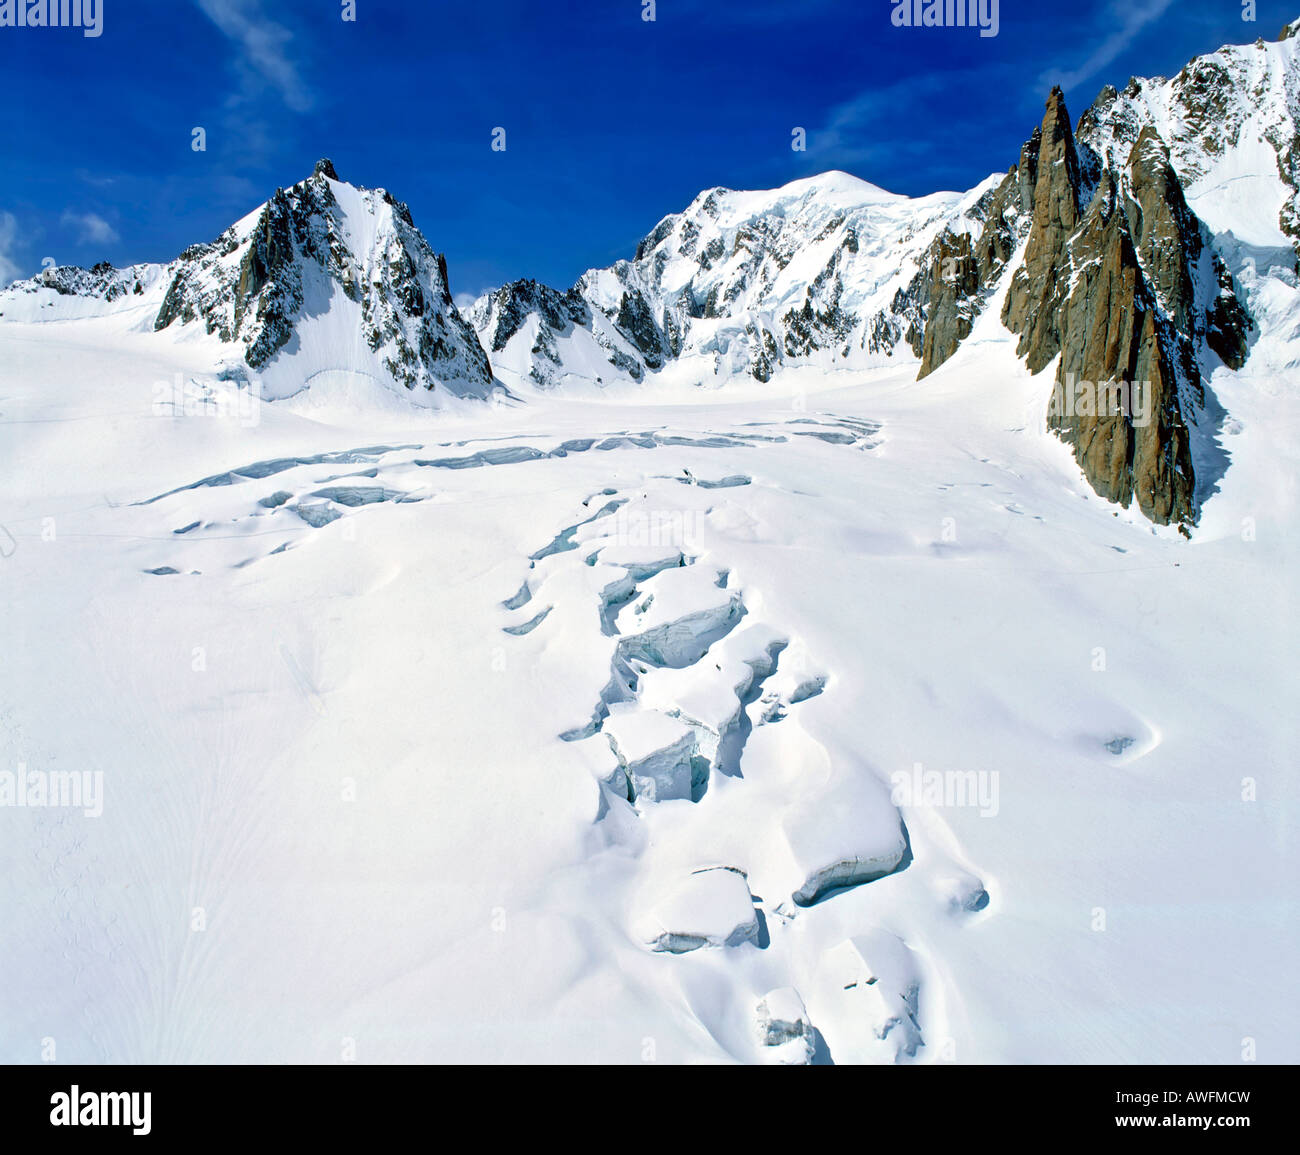 Vallée Blanche, Mont Blanc vue de l'orient, crevasses glaciaires Savoie, Alpes, France, Europe Banque D'Images